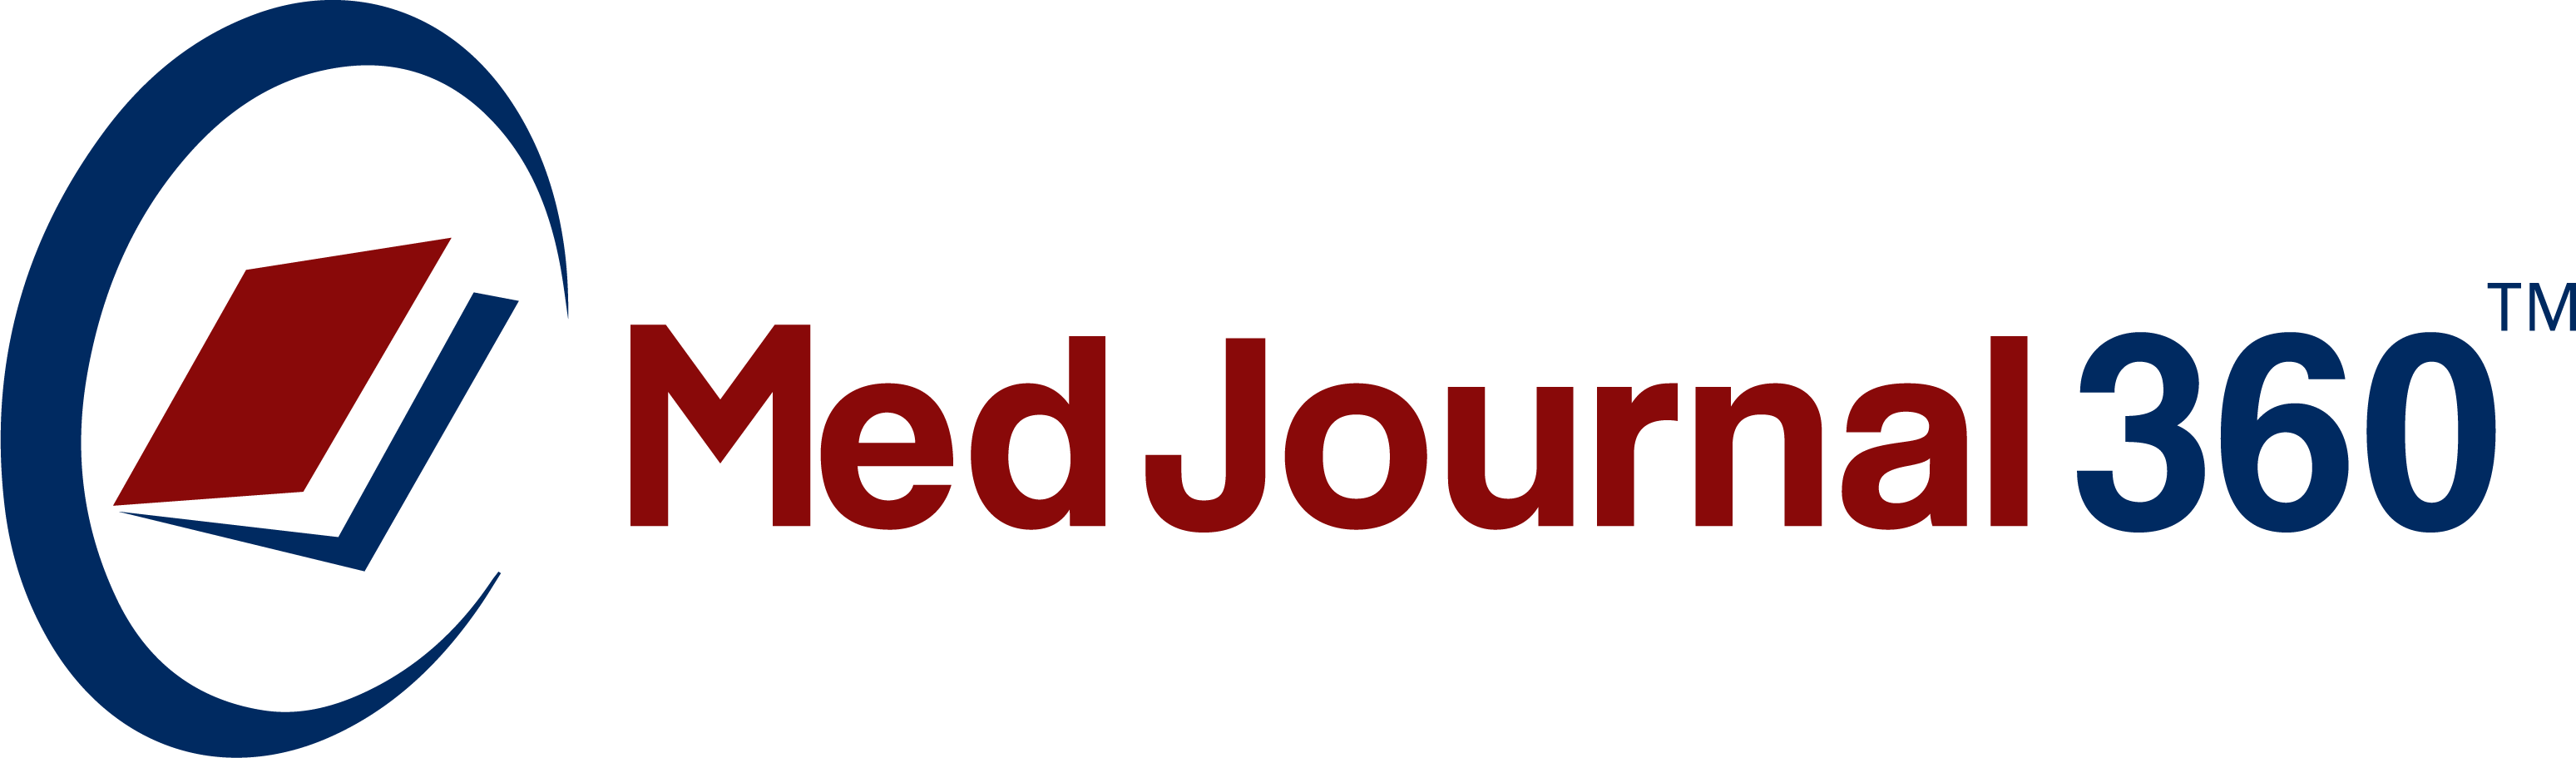 MedJournal360 Logo